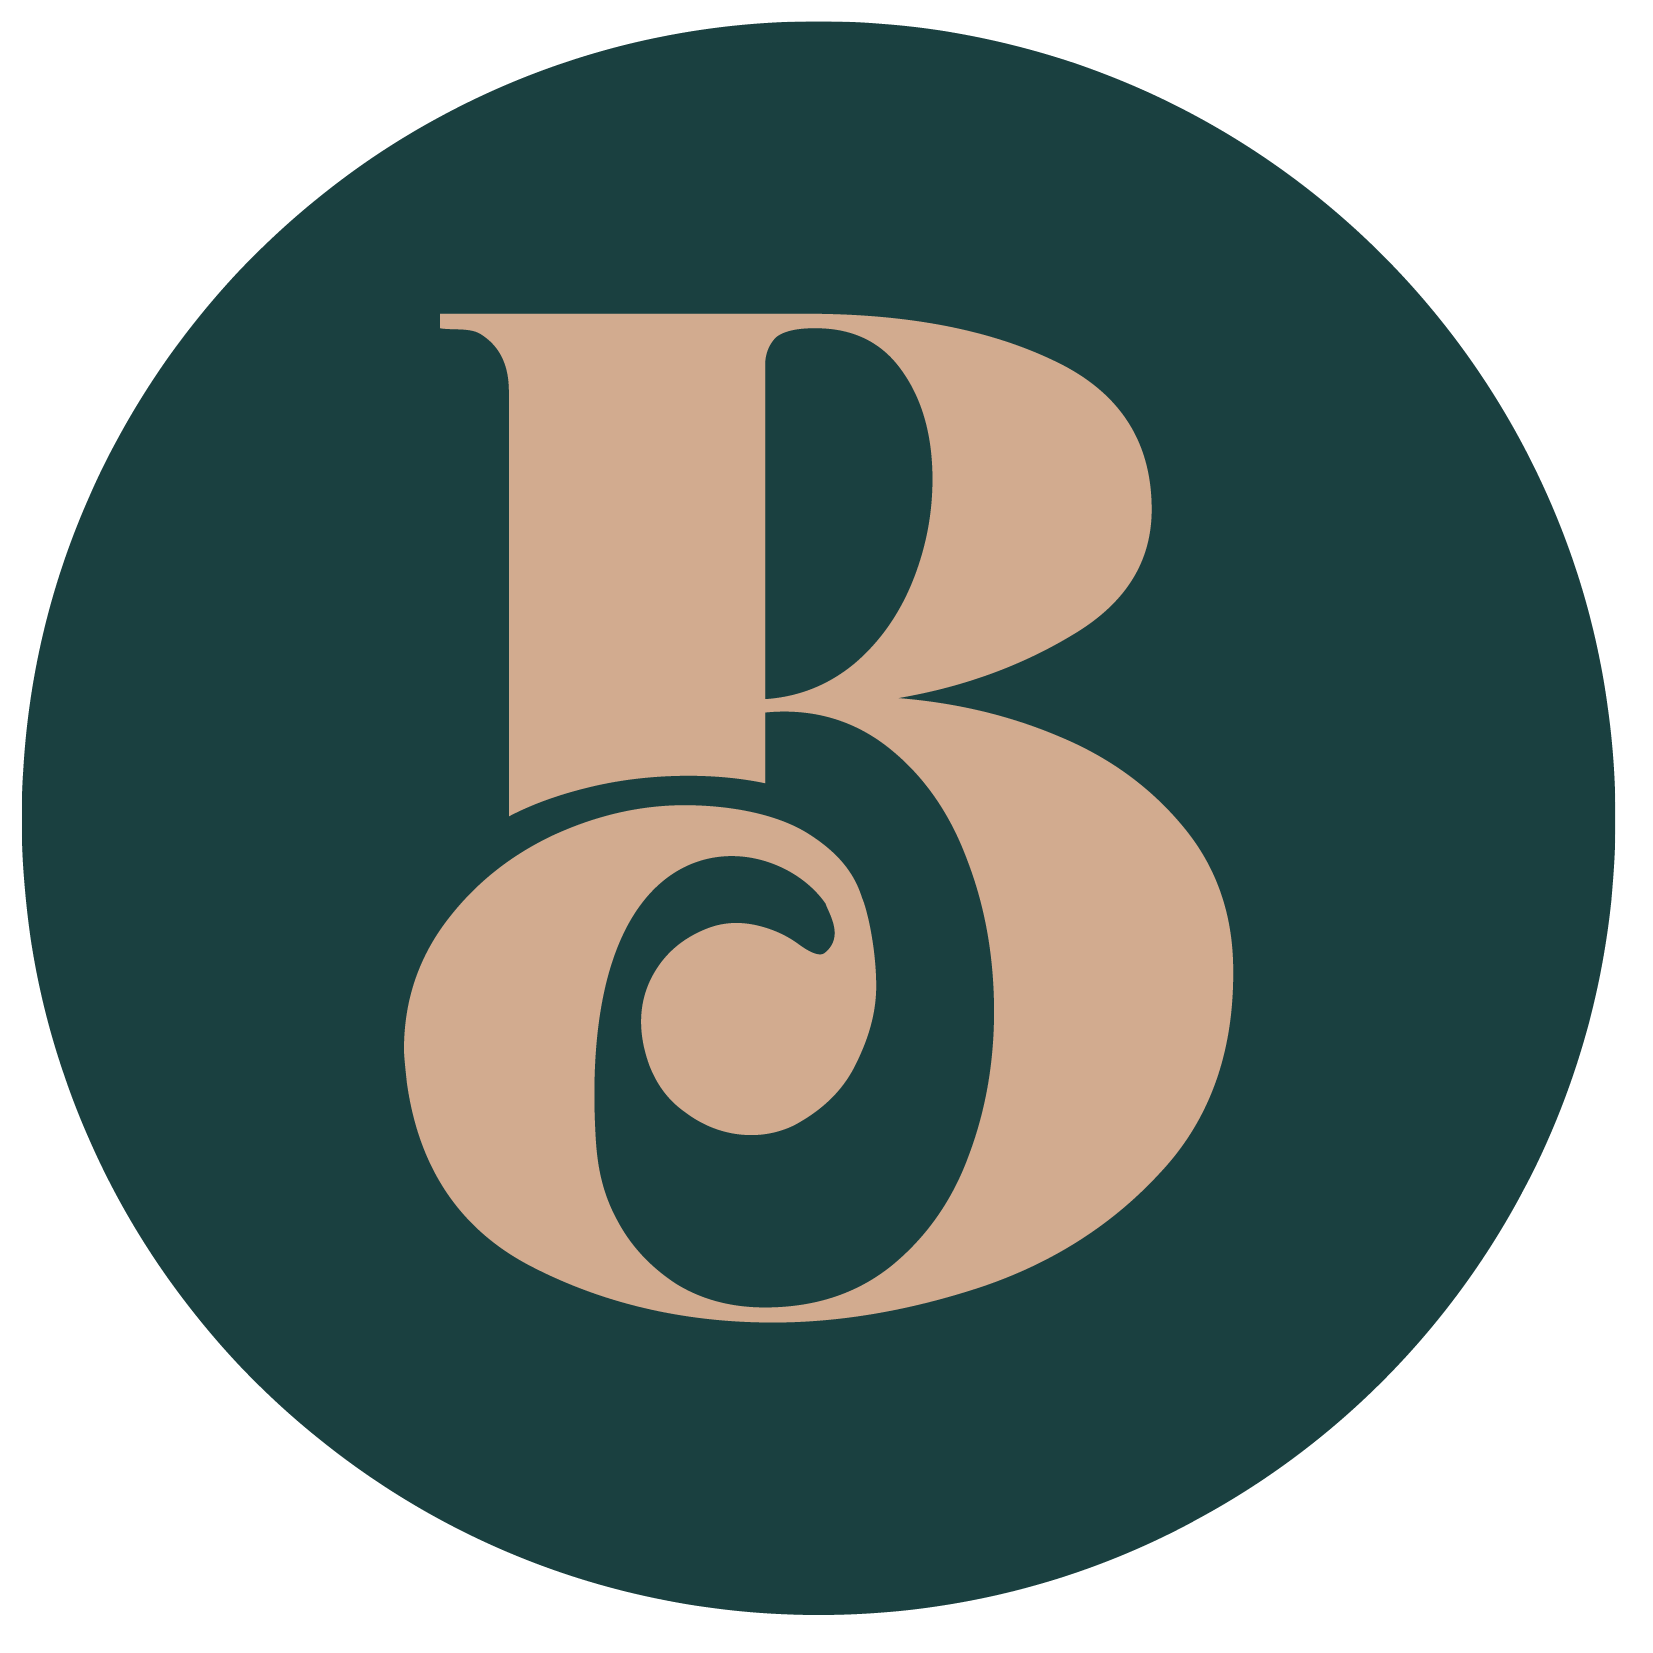 The Barnett Studio logo